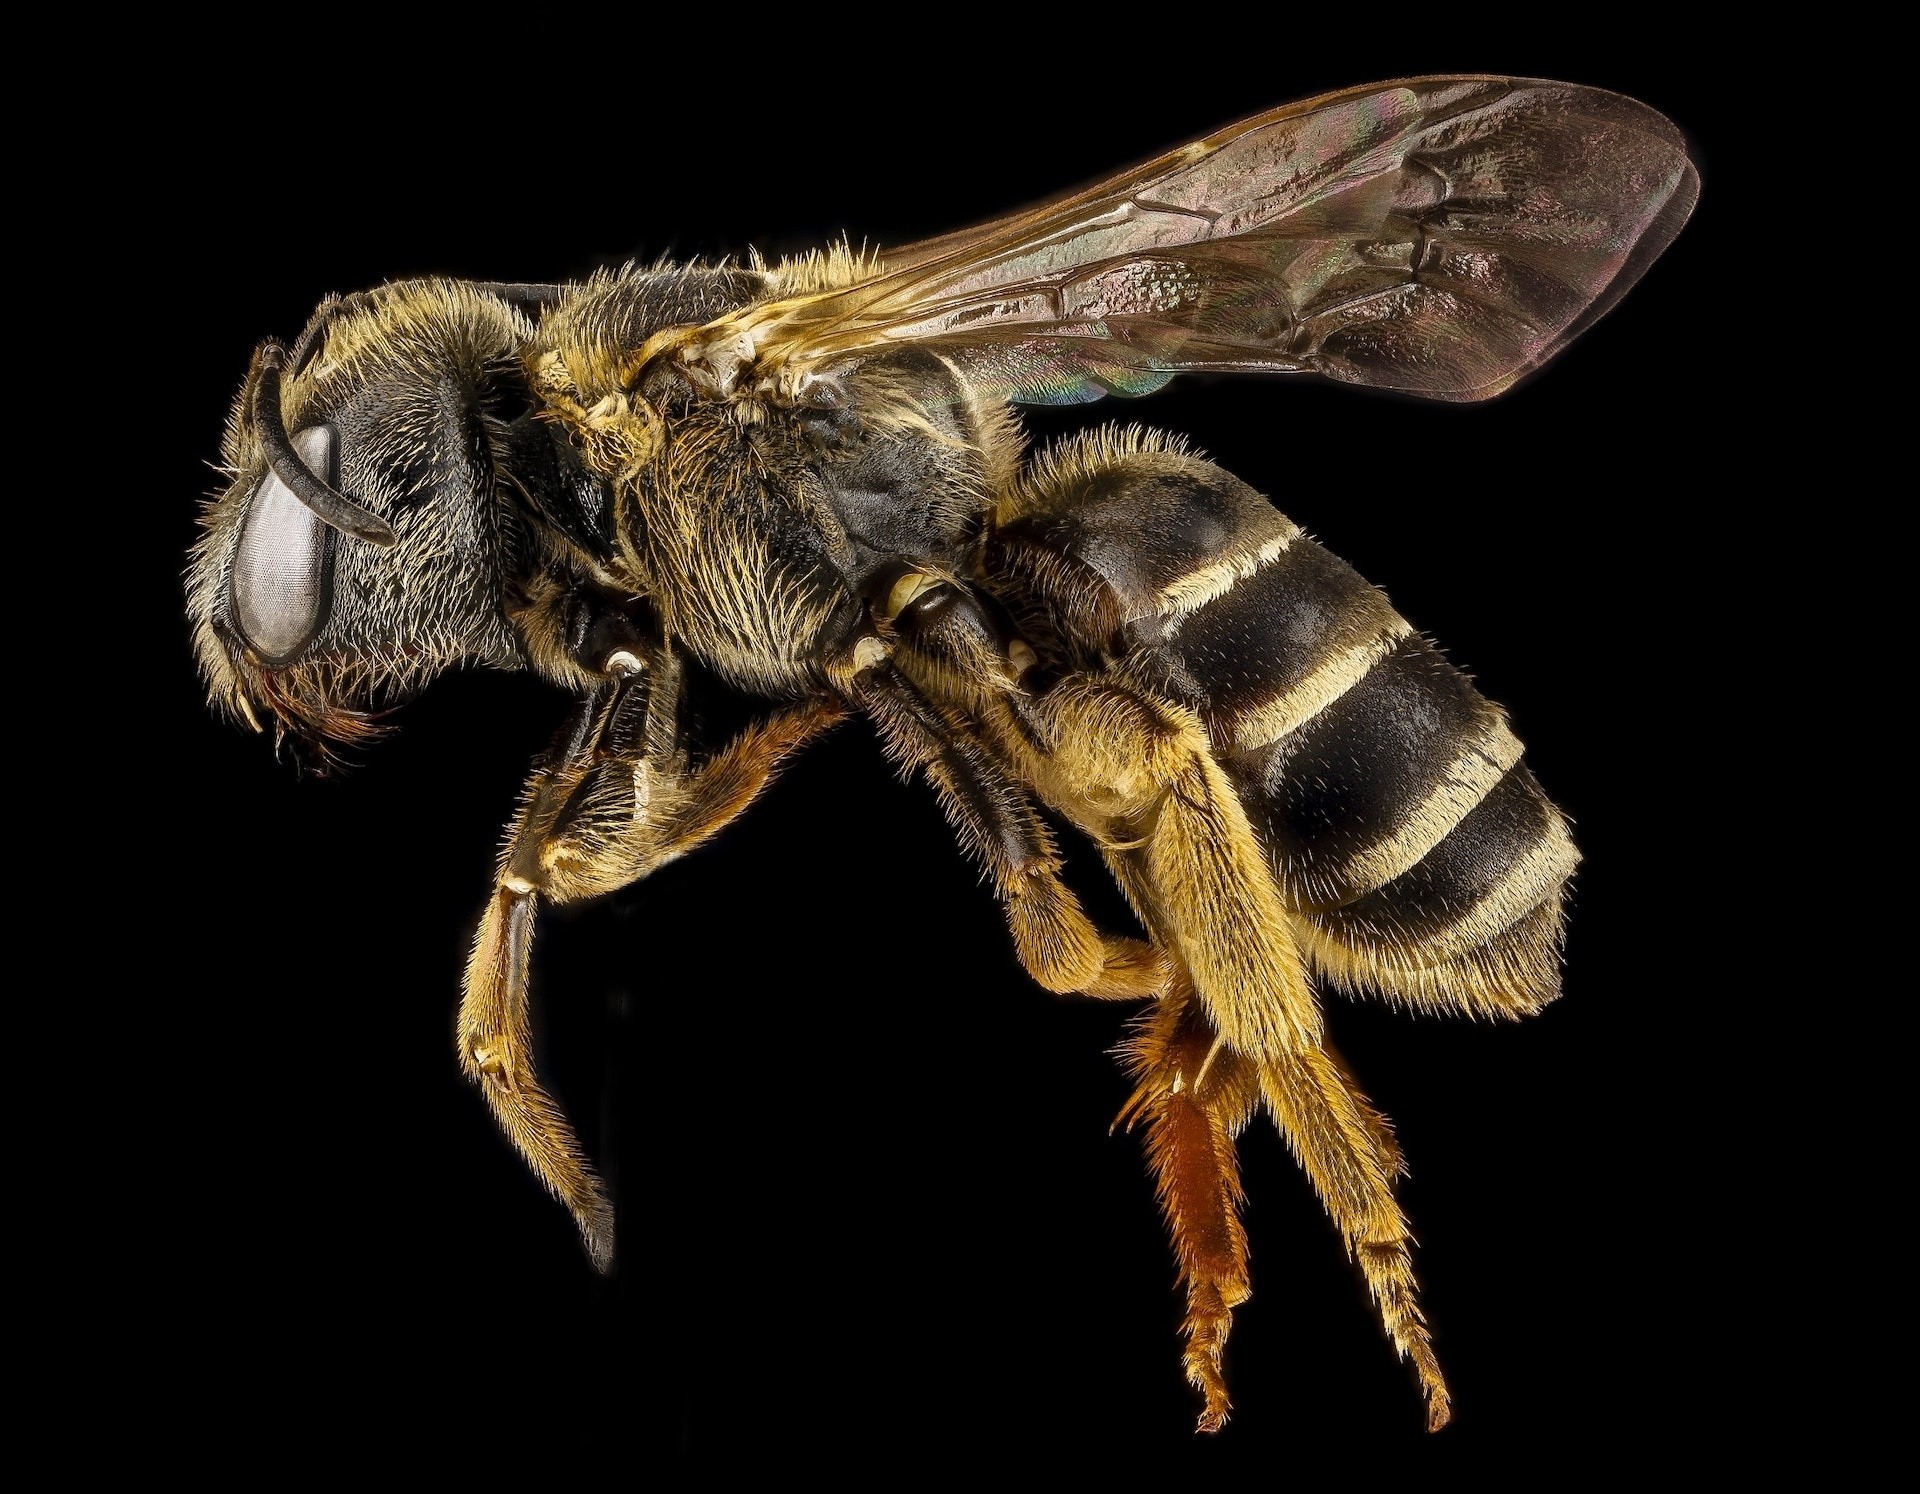 Una picadura de abeja puede ser mortal, ¿por qué ocurre?